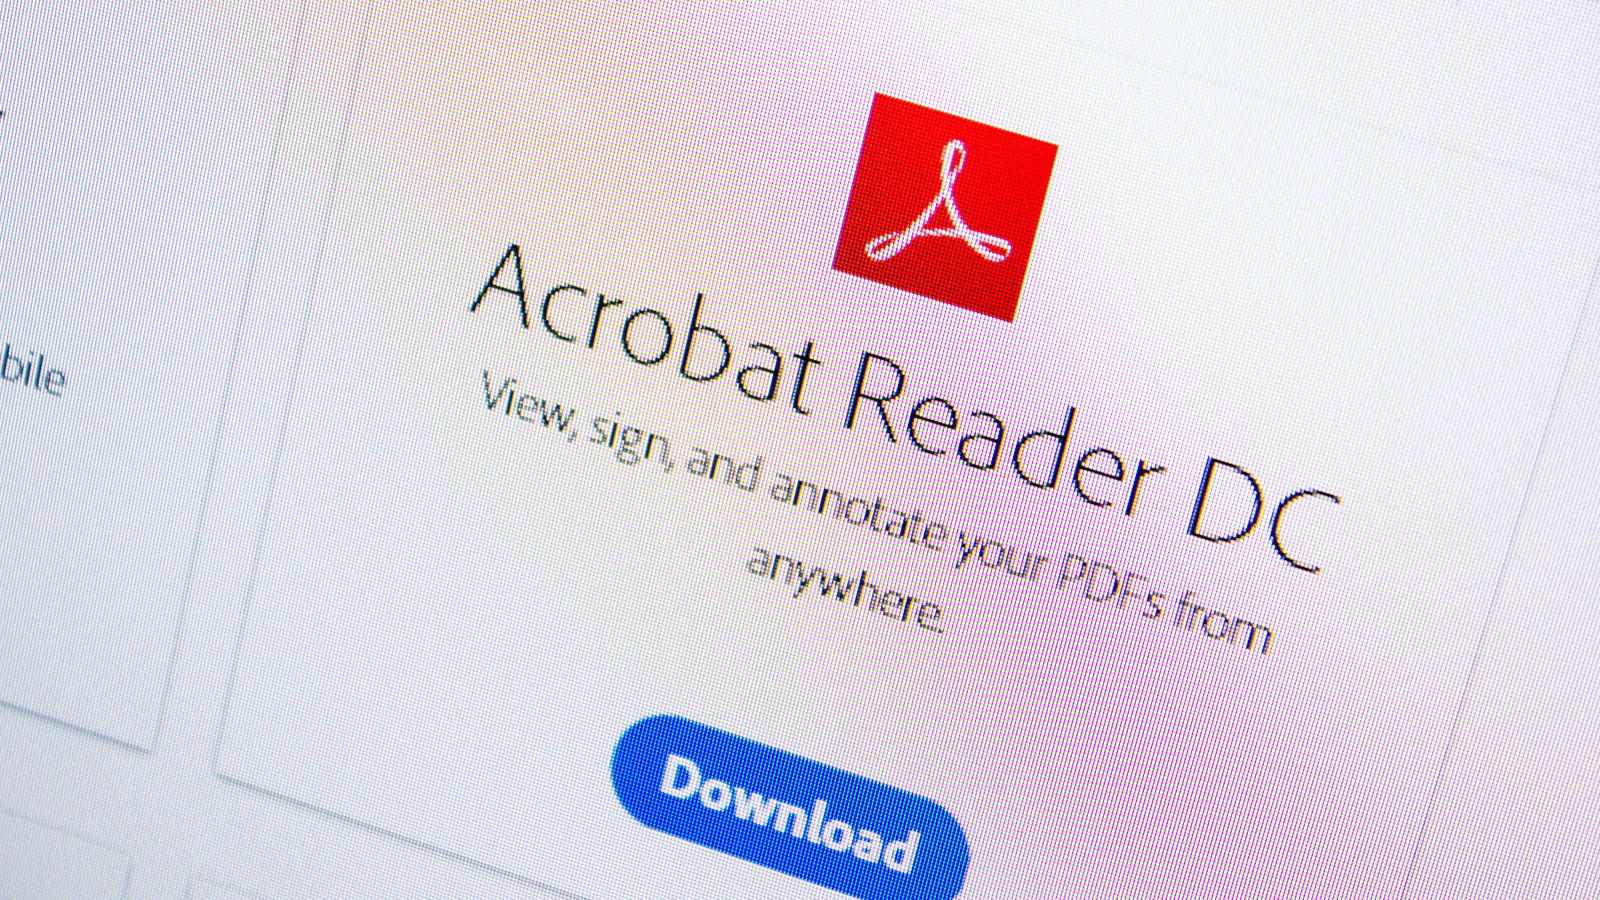 Adobe Acrobat can block antivirus programs from checking PDF files